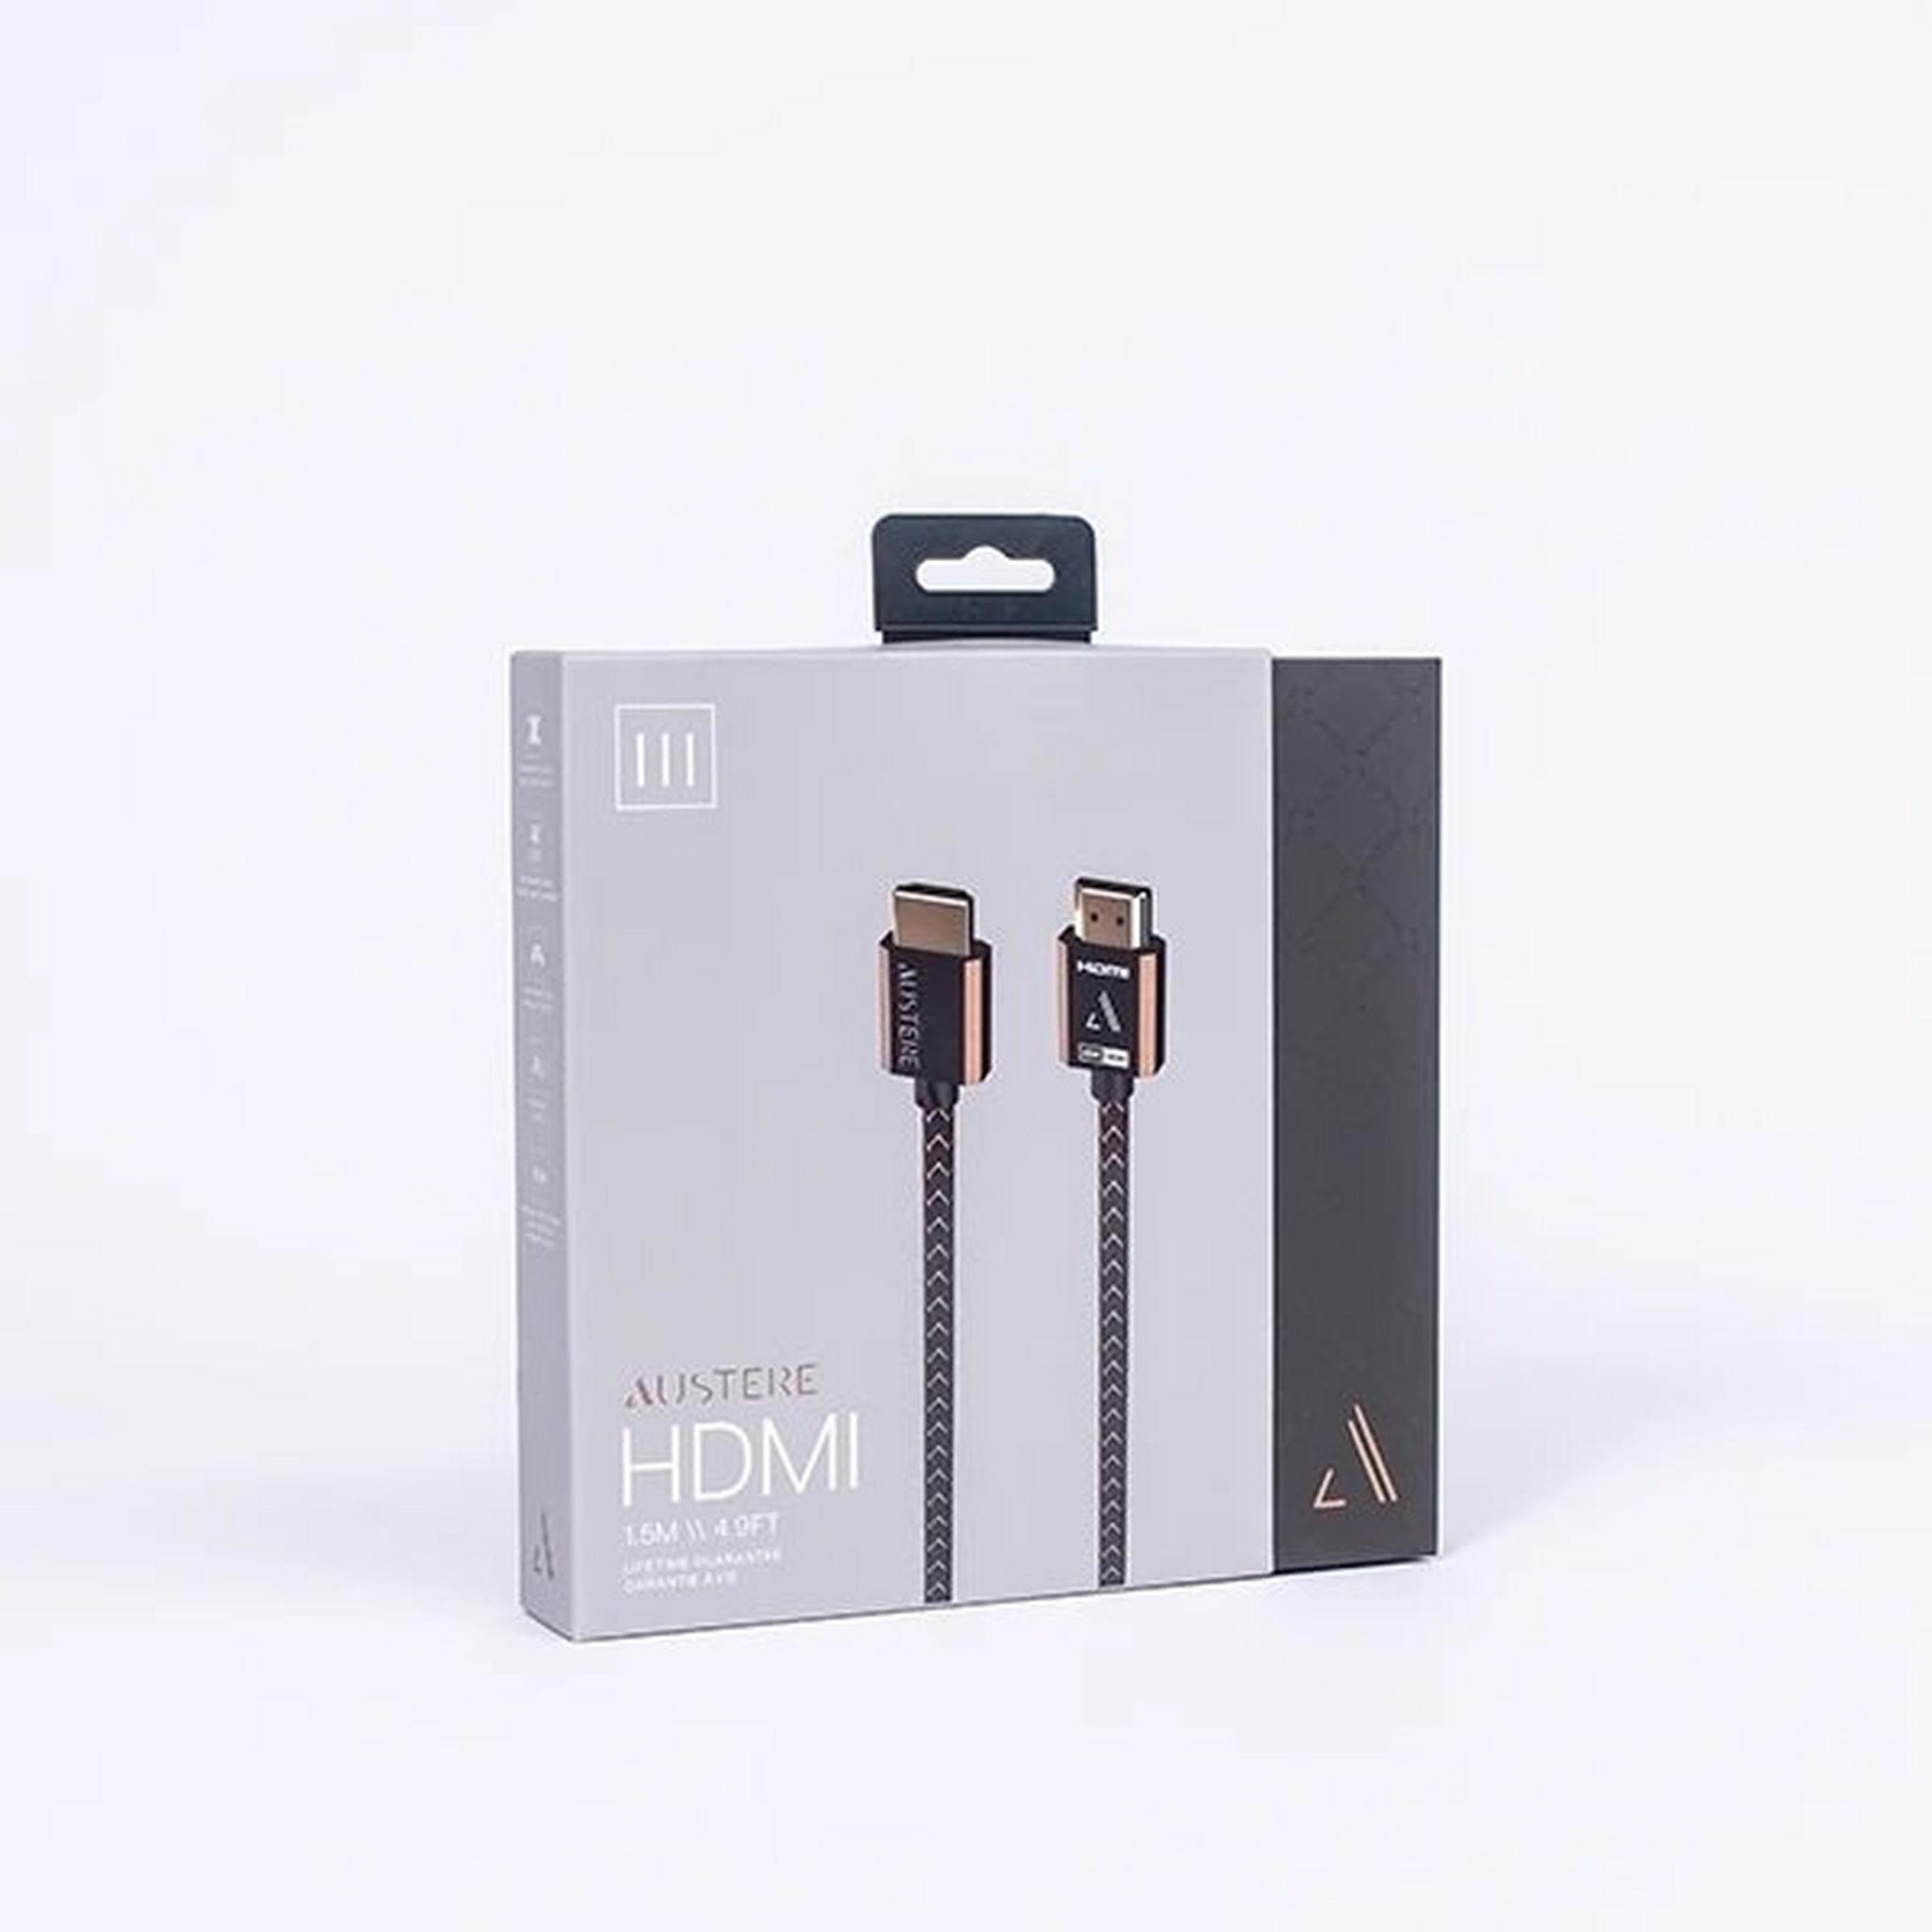 كابل أوستير HDMI سلسلة III بجودة 4كي - بطول 1.5 متر